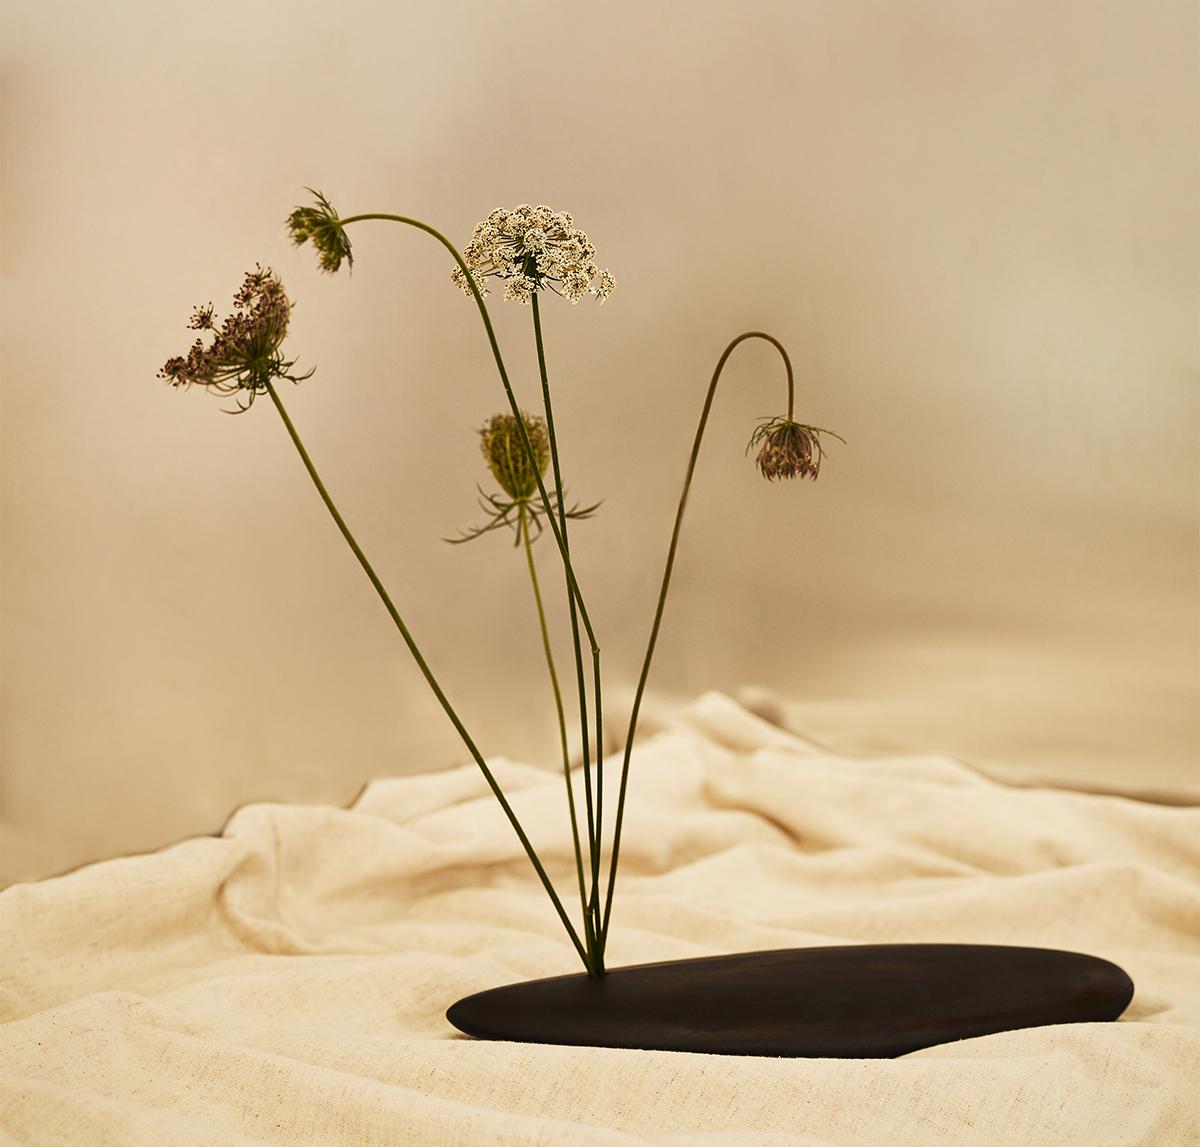 Attribué à l'art japonais séculaire de l'arrangement des fleurs, le vase Ikebana est créé avec İlayda Ergün, un artiste céramiste basé à Istanbul, pourtant l'un des designers de notre studio. S'inspirant de la philosophie de l'Ikebana qui met